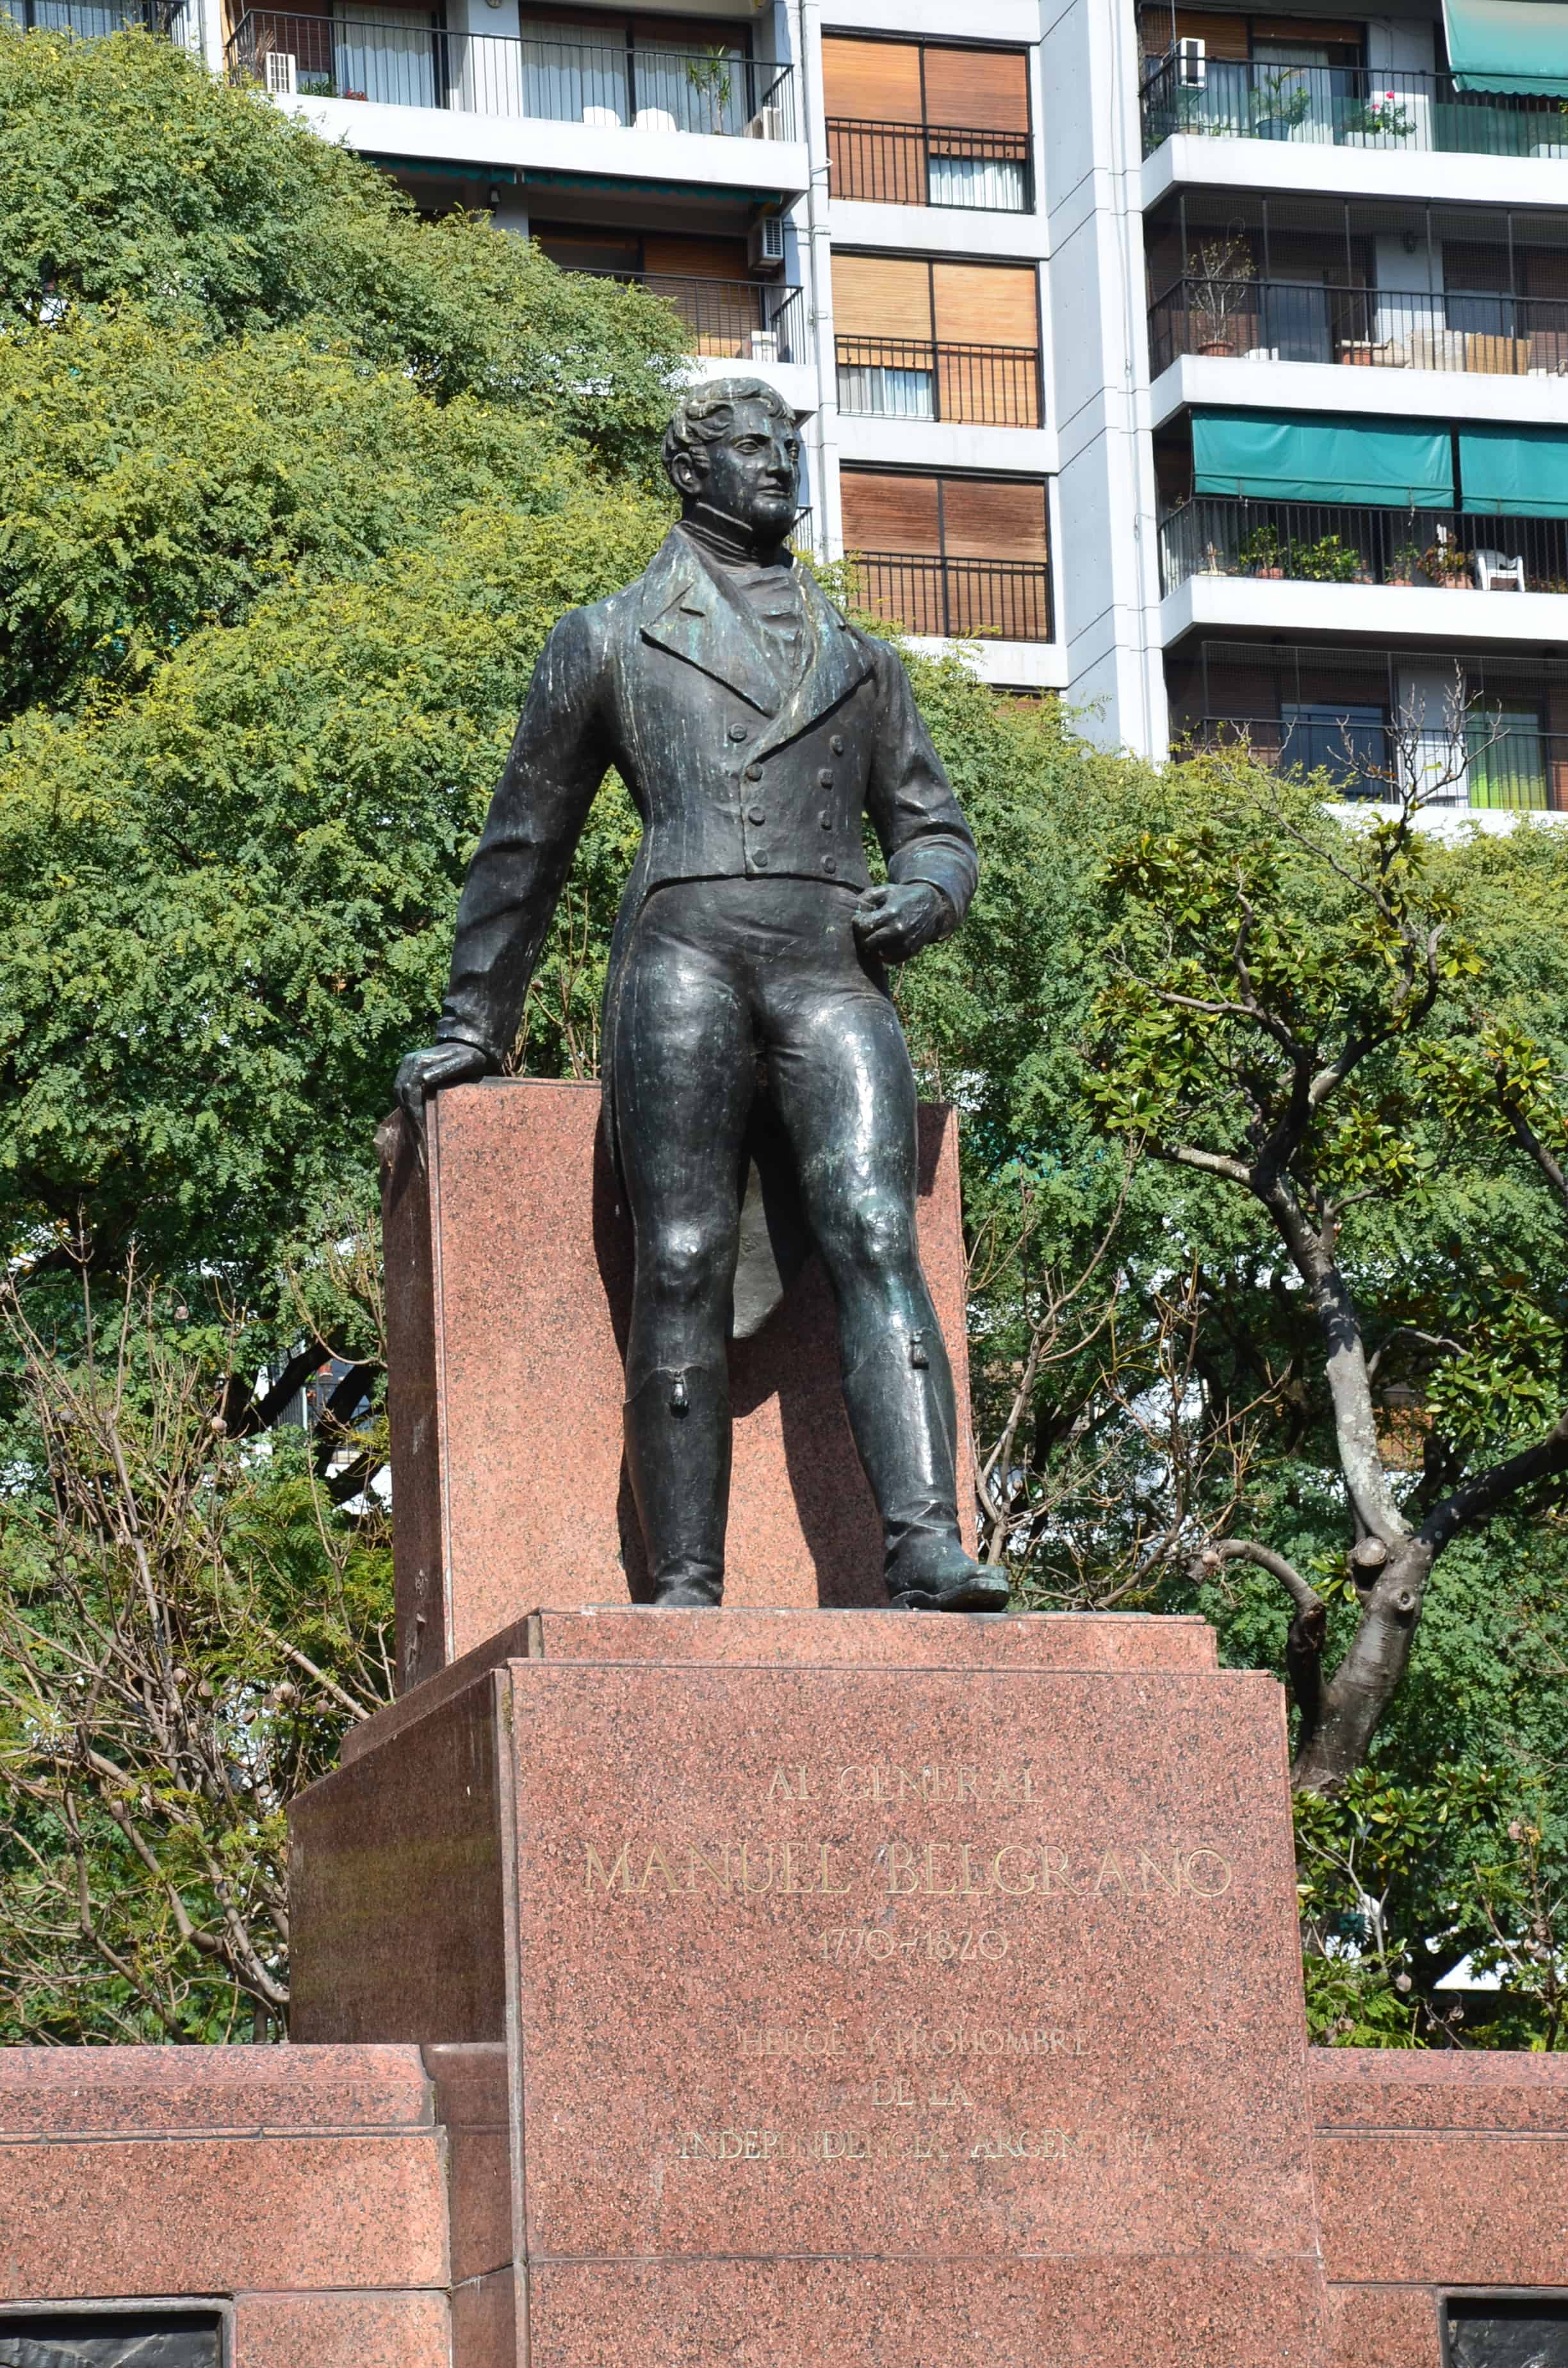 Manuel Belgrano monument in Belgrano, Buenos Aires, Argentina